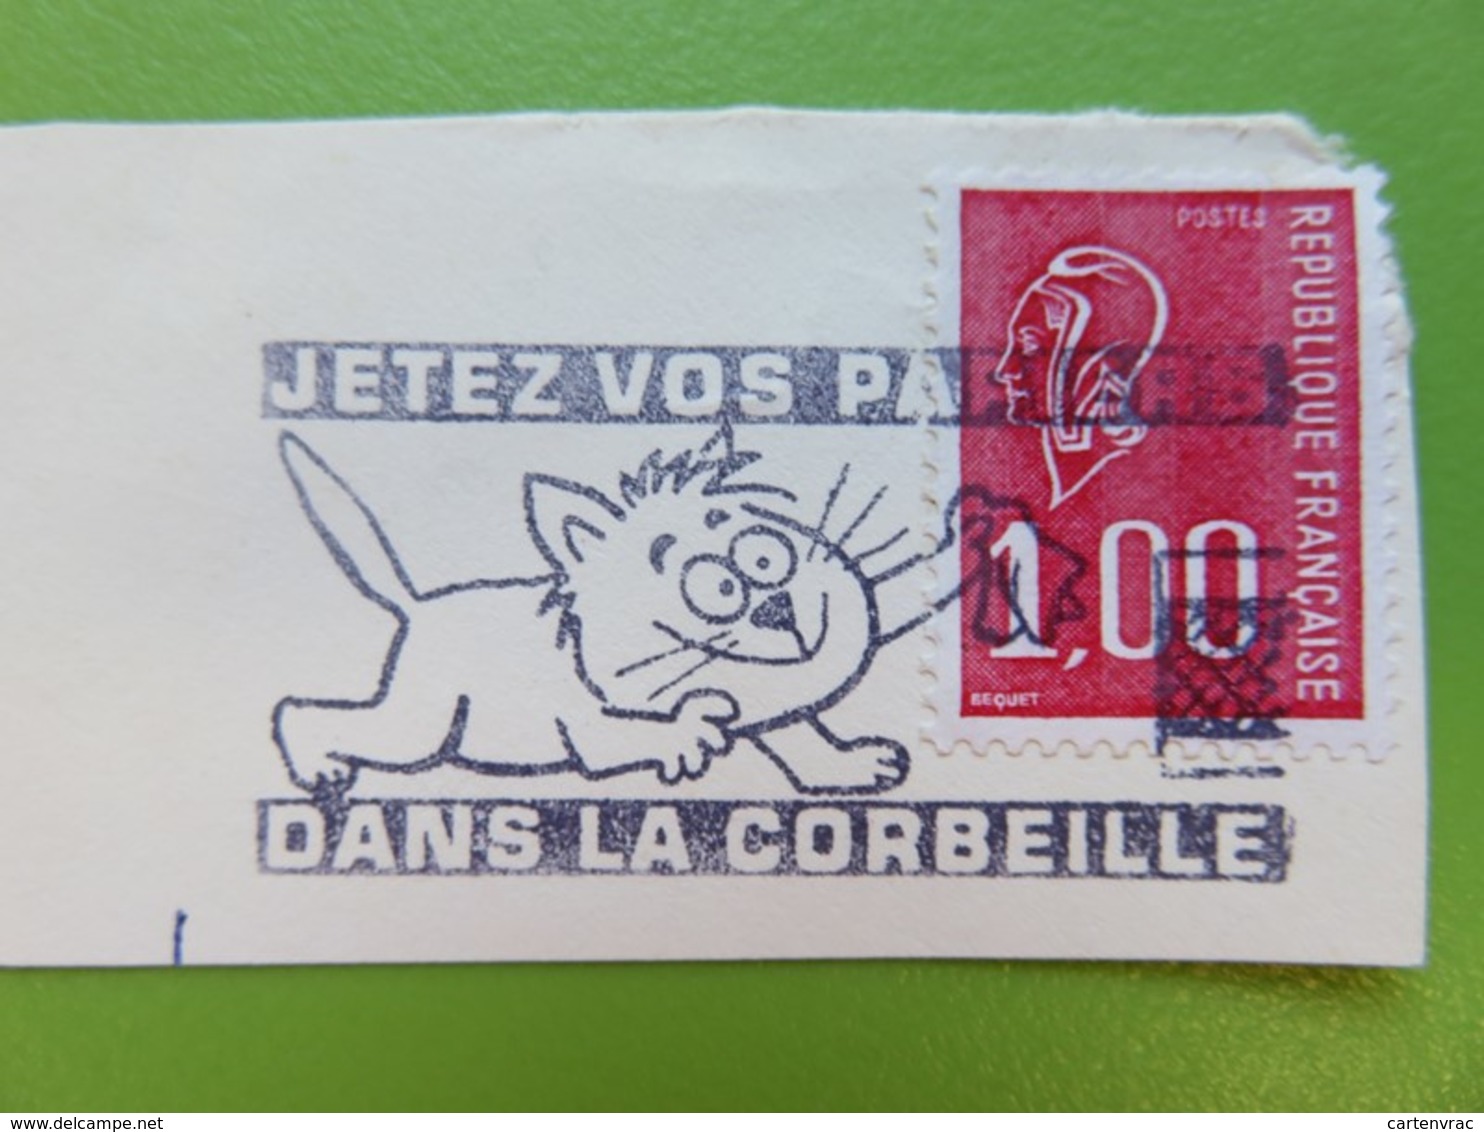 Flamme - Jetez Vos Papiers - Dessin D'un Chat - Cachet Rue Du Louvre (Paris 1er) - Timbre YT N° 1892 - 1977 - Mechanical Postmarks (Advertisement)